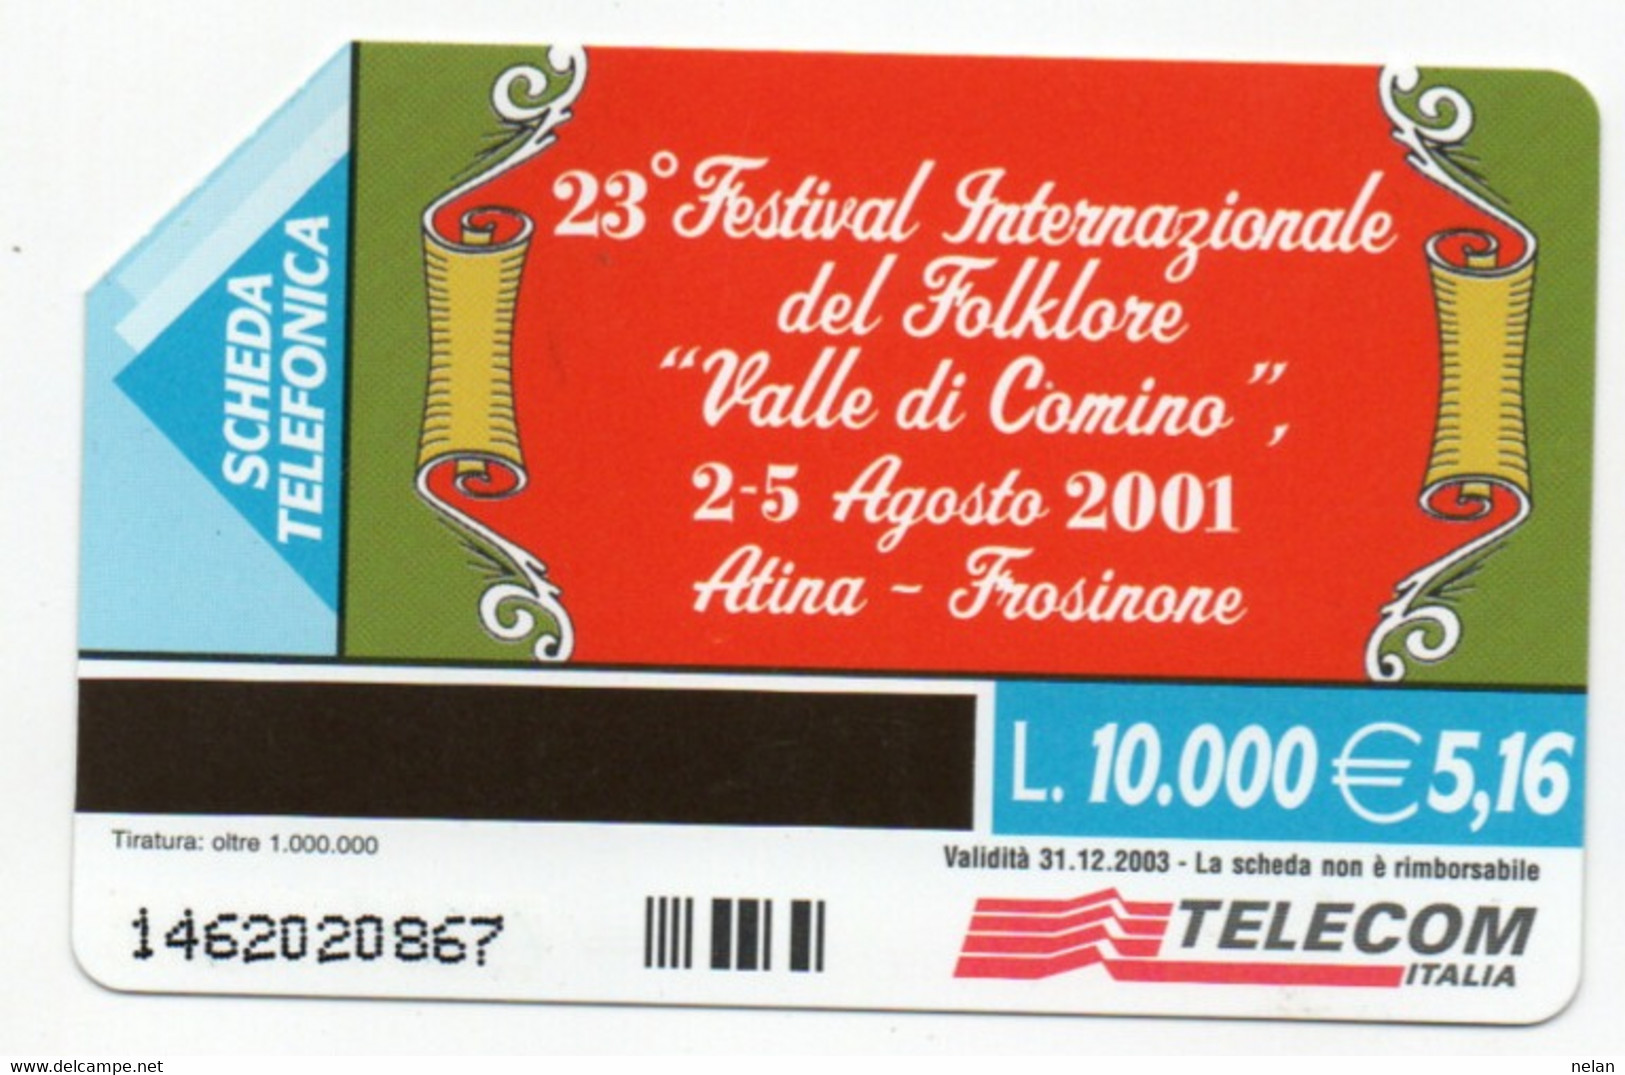 ITALIA - TELECOM - 23 FESTIVAL INTERNAZIONALE DEL FOLKLORE VALLE DI COMINO 2001 - ATINA - FROSINONE - Kultur